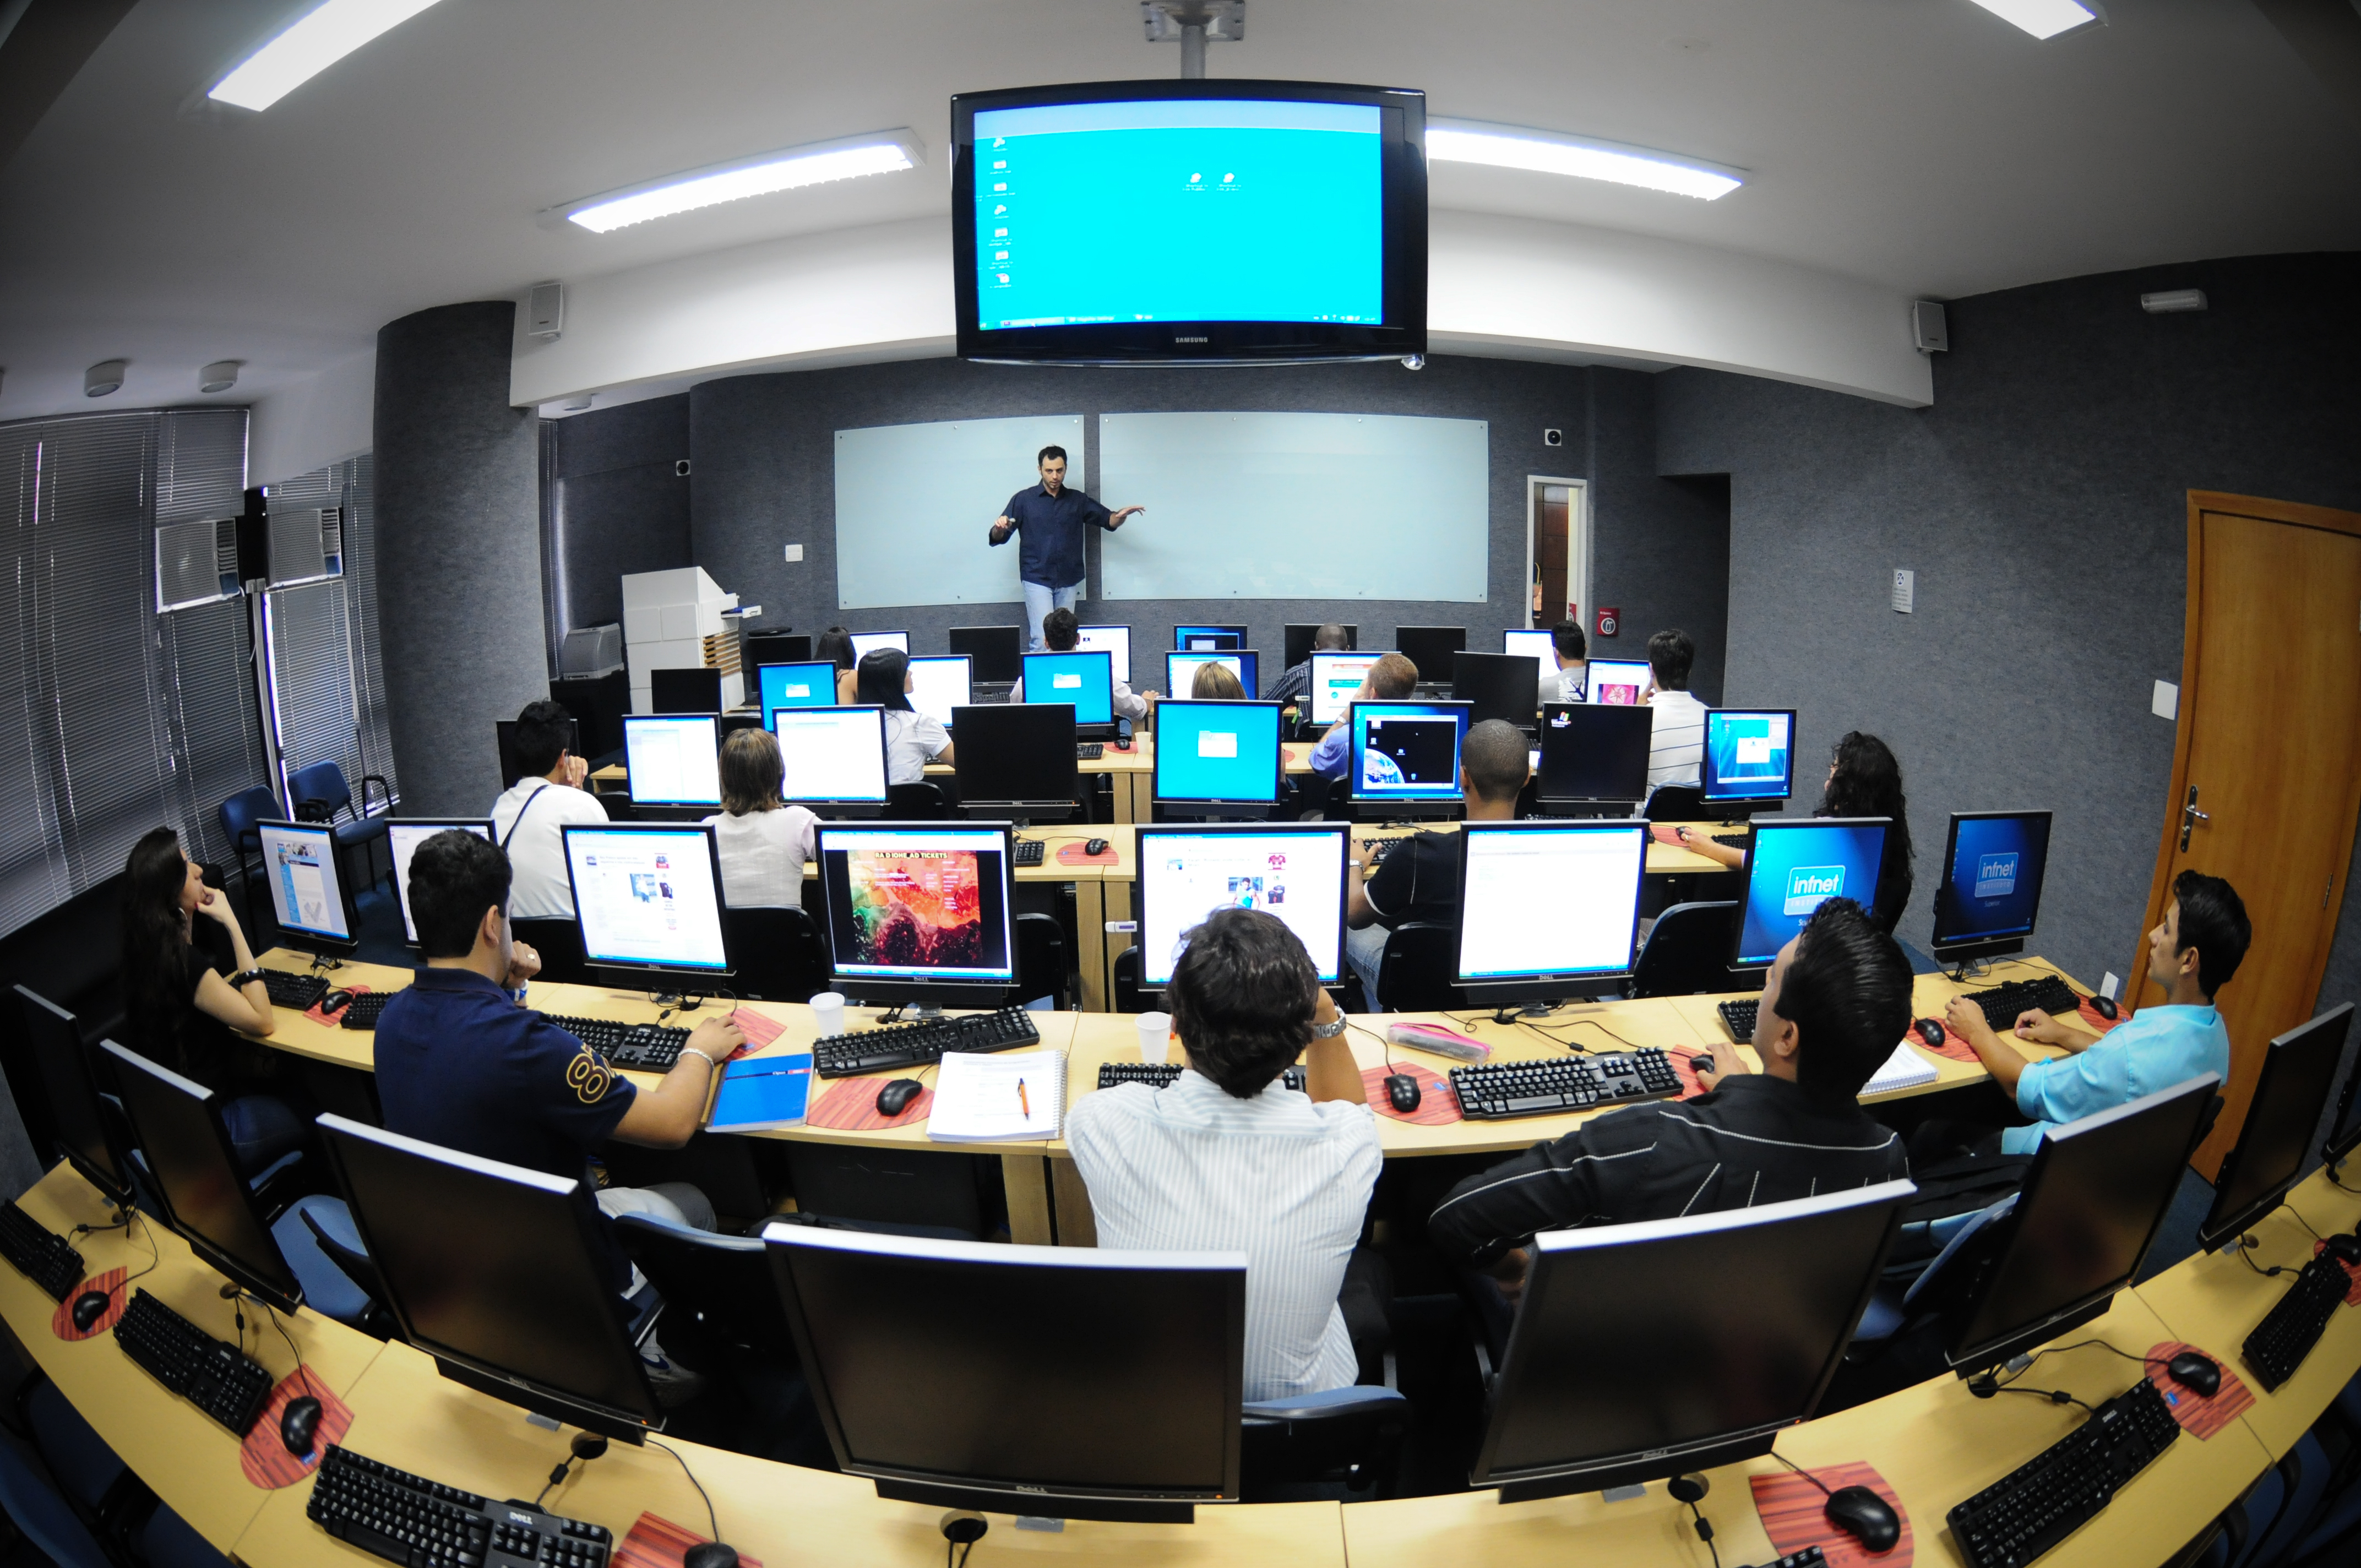 Aula con estudiantes usando computadoras y profesor al frente con pantalla digital 